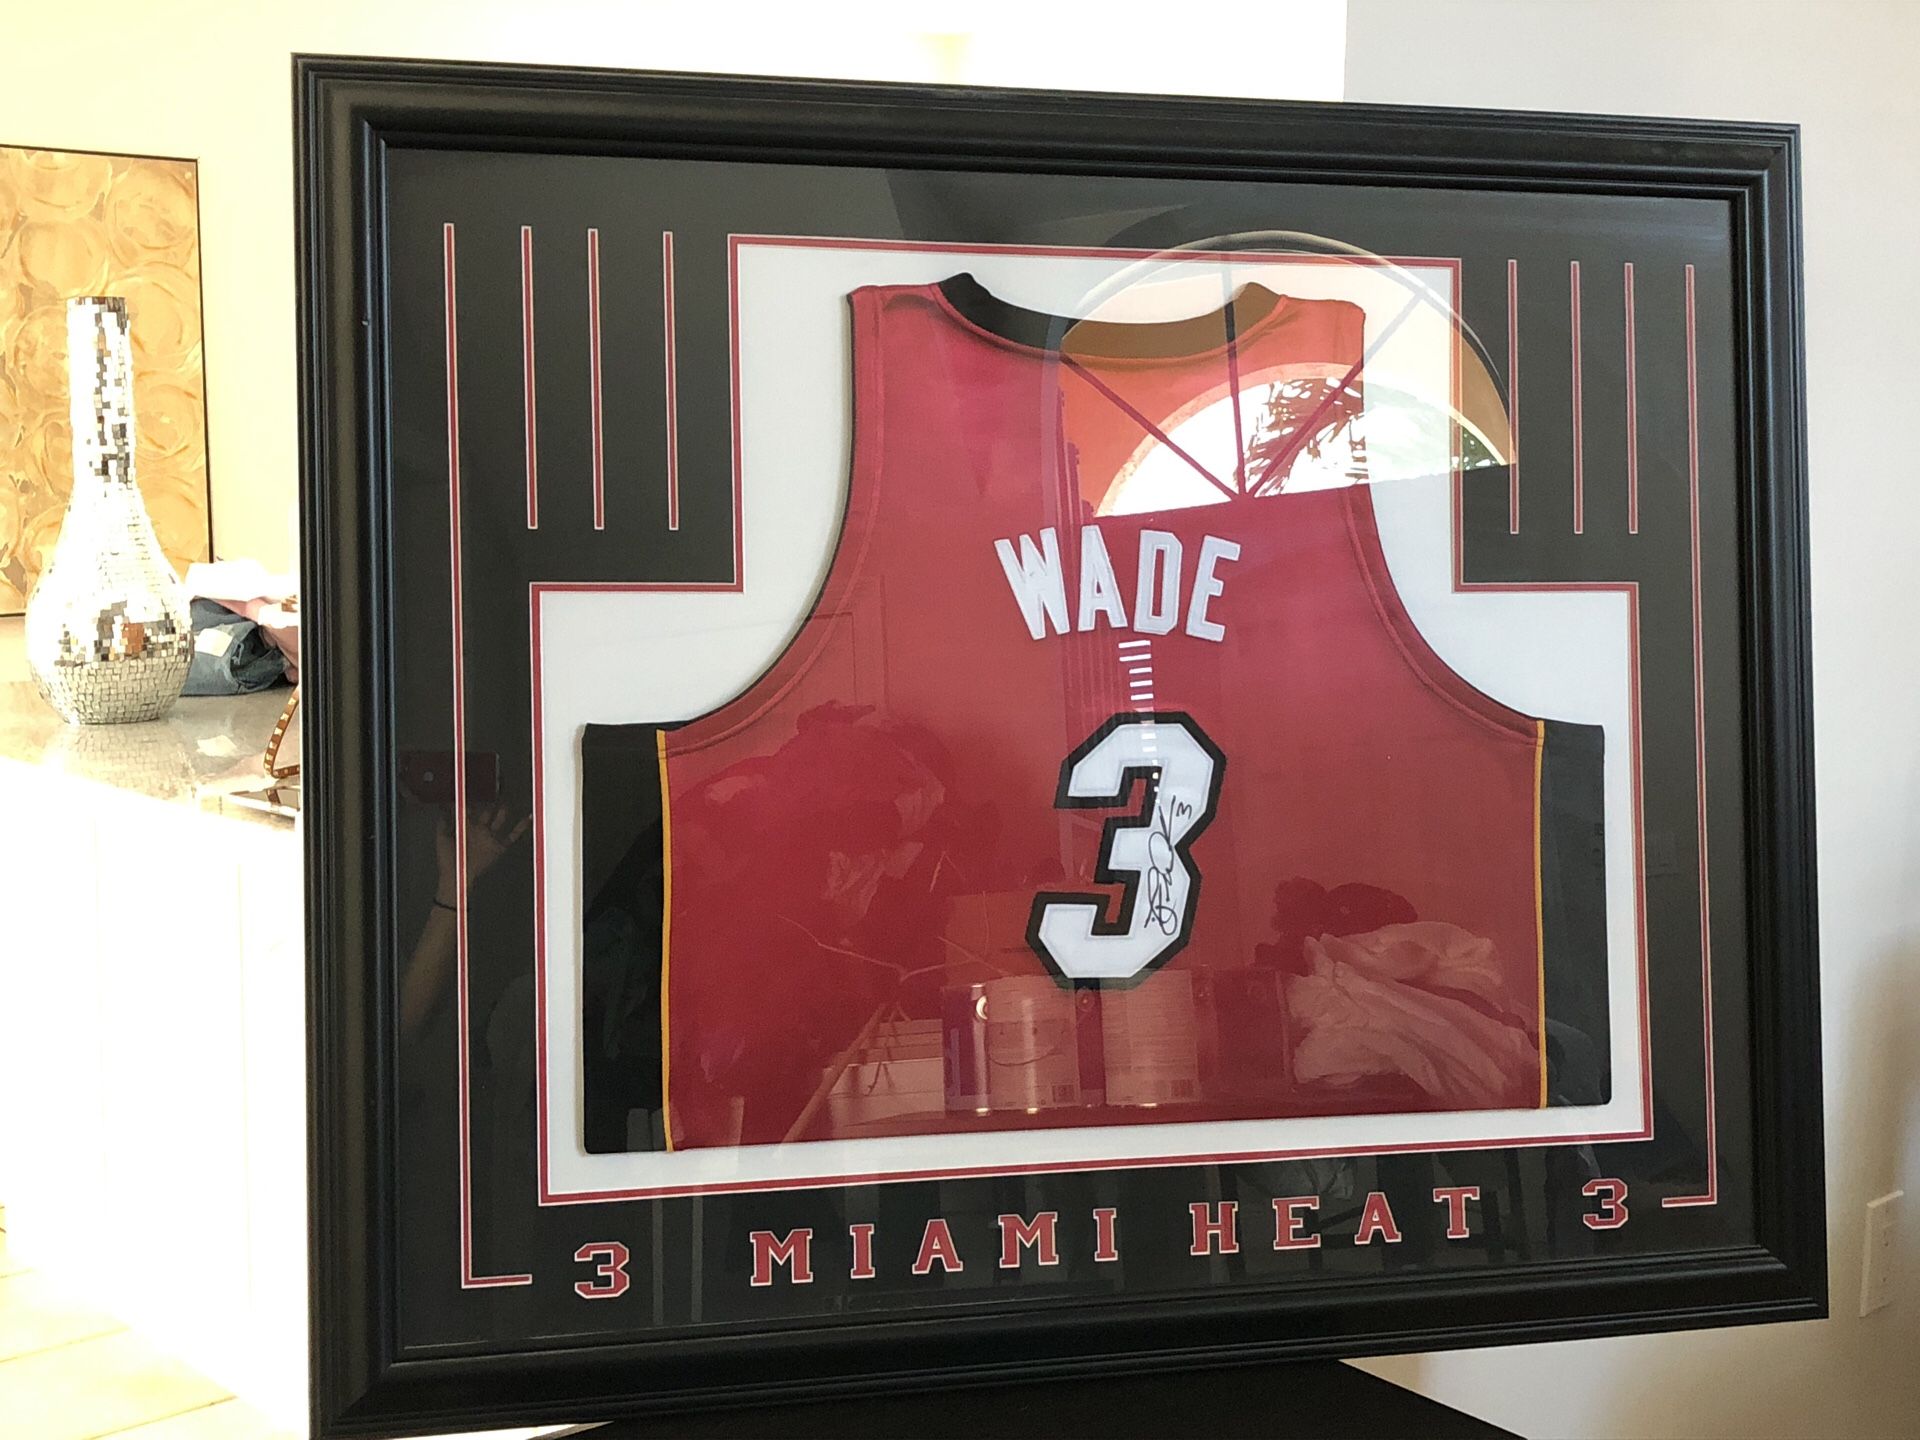 Dwayne Wade Signed Jersey Framed for Sale in Boca Raton, FL - OfferUp